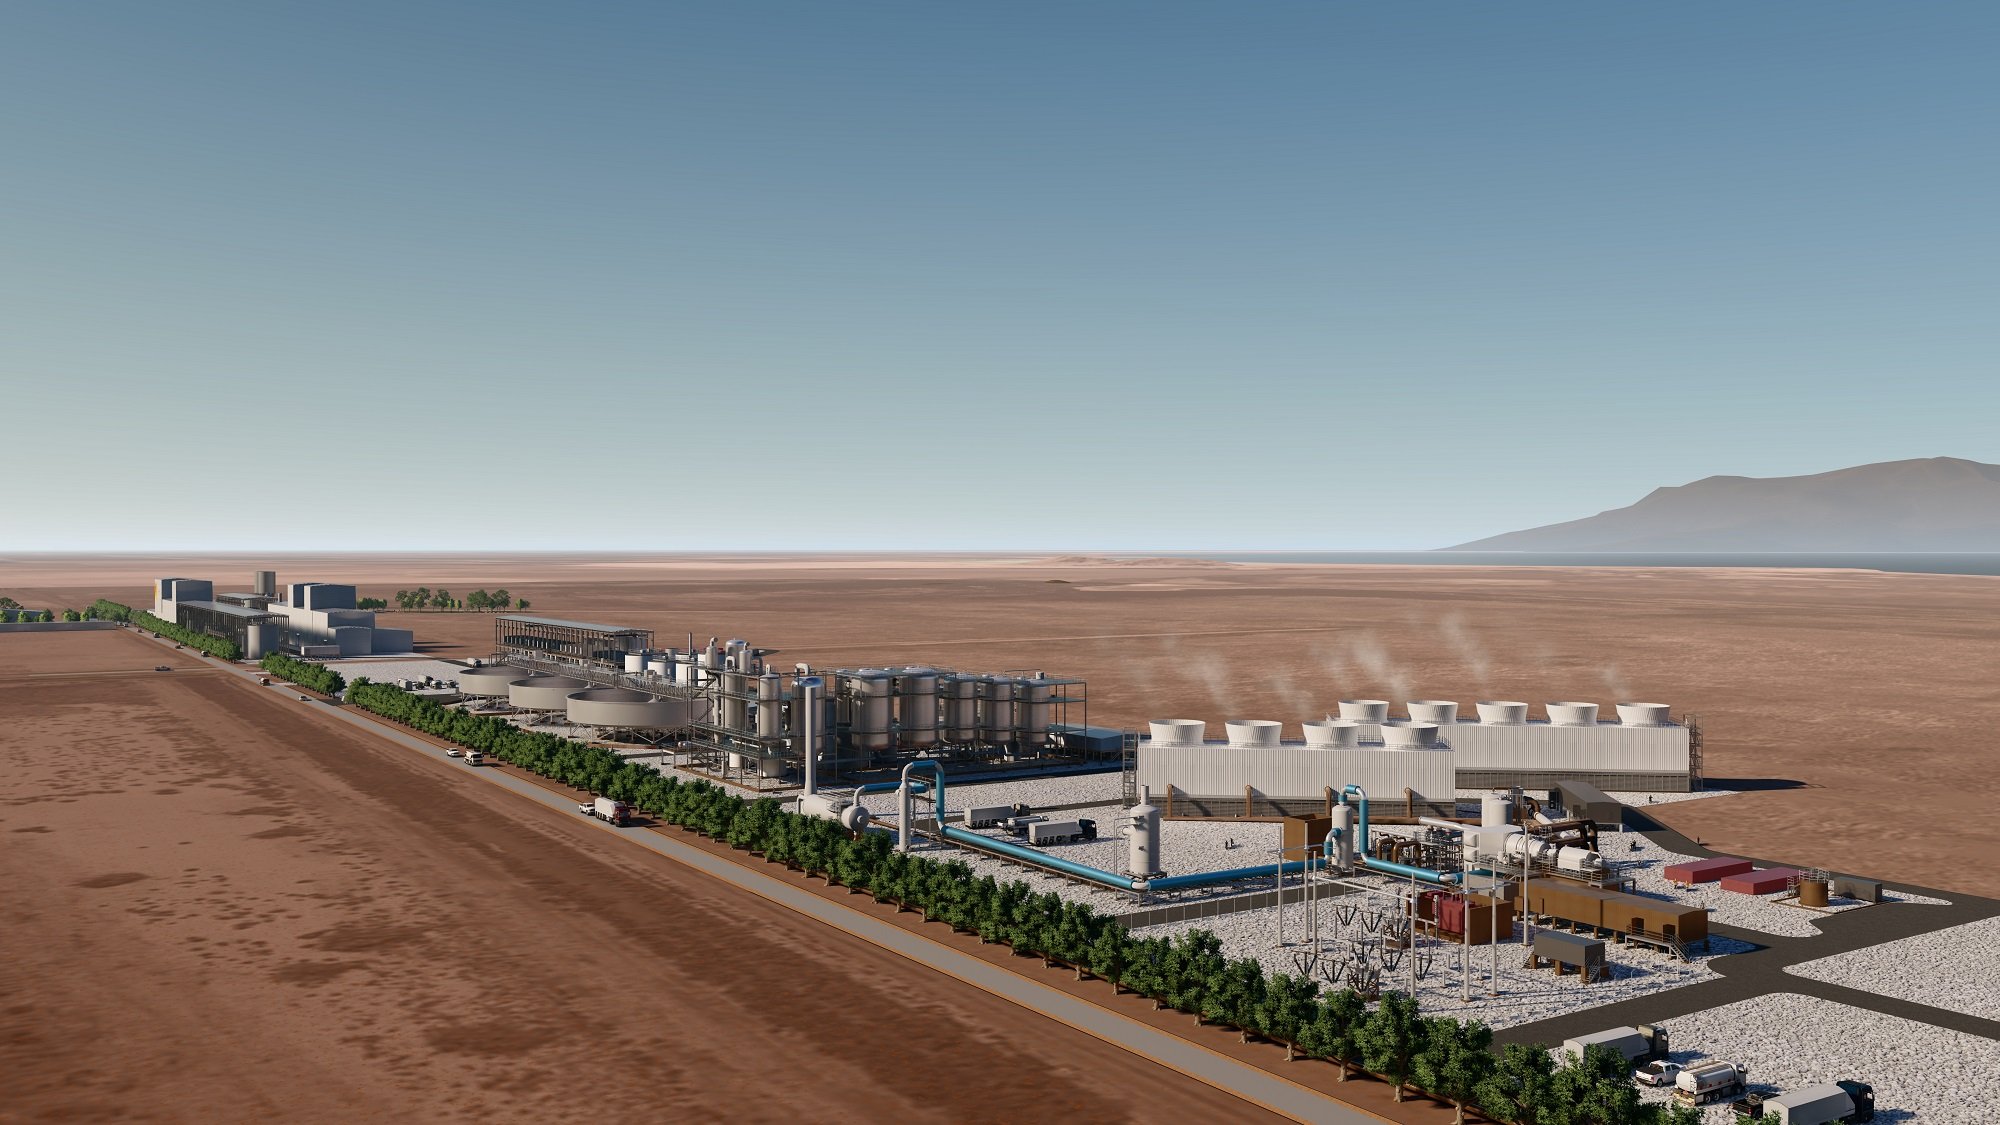 Stellantis met 100 millions de dollars sur un nouveau projet de lithium géothermique en Californie